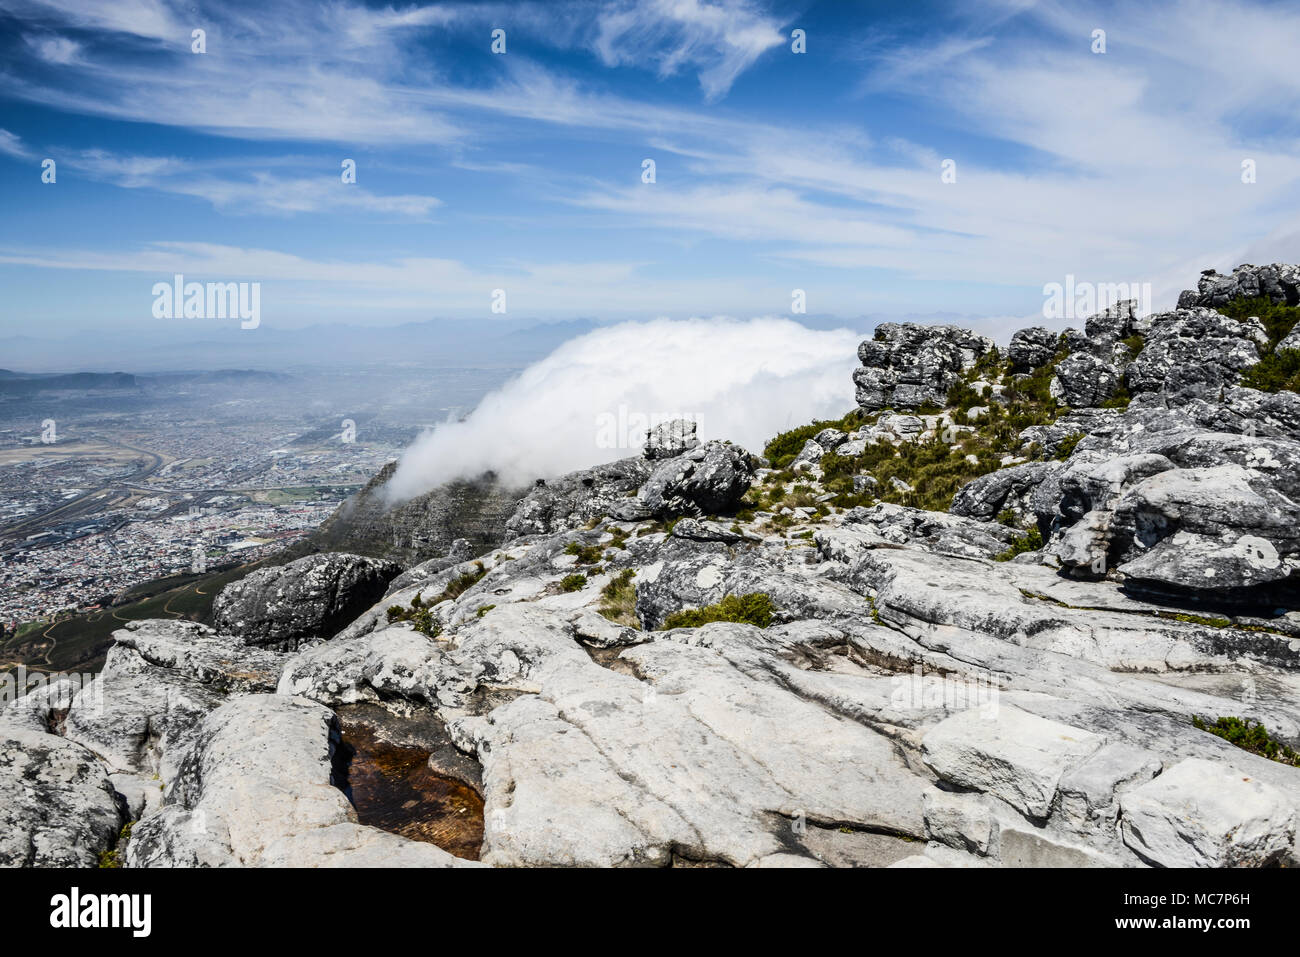 La banlieue de Cape Town en dessous de Devil's Peak couvert de nuages bas vu du haut de Table Mountain, Cape Town, Afrique du Sud Banque D'Images